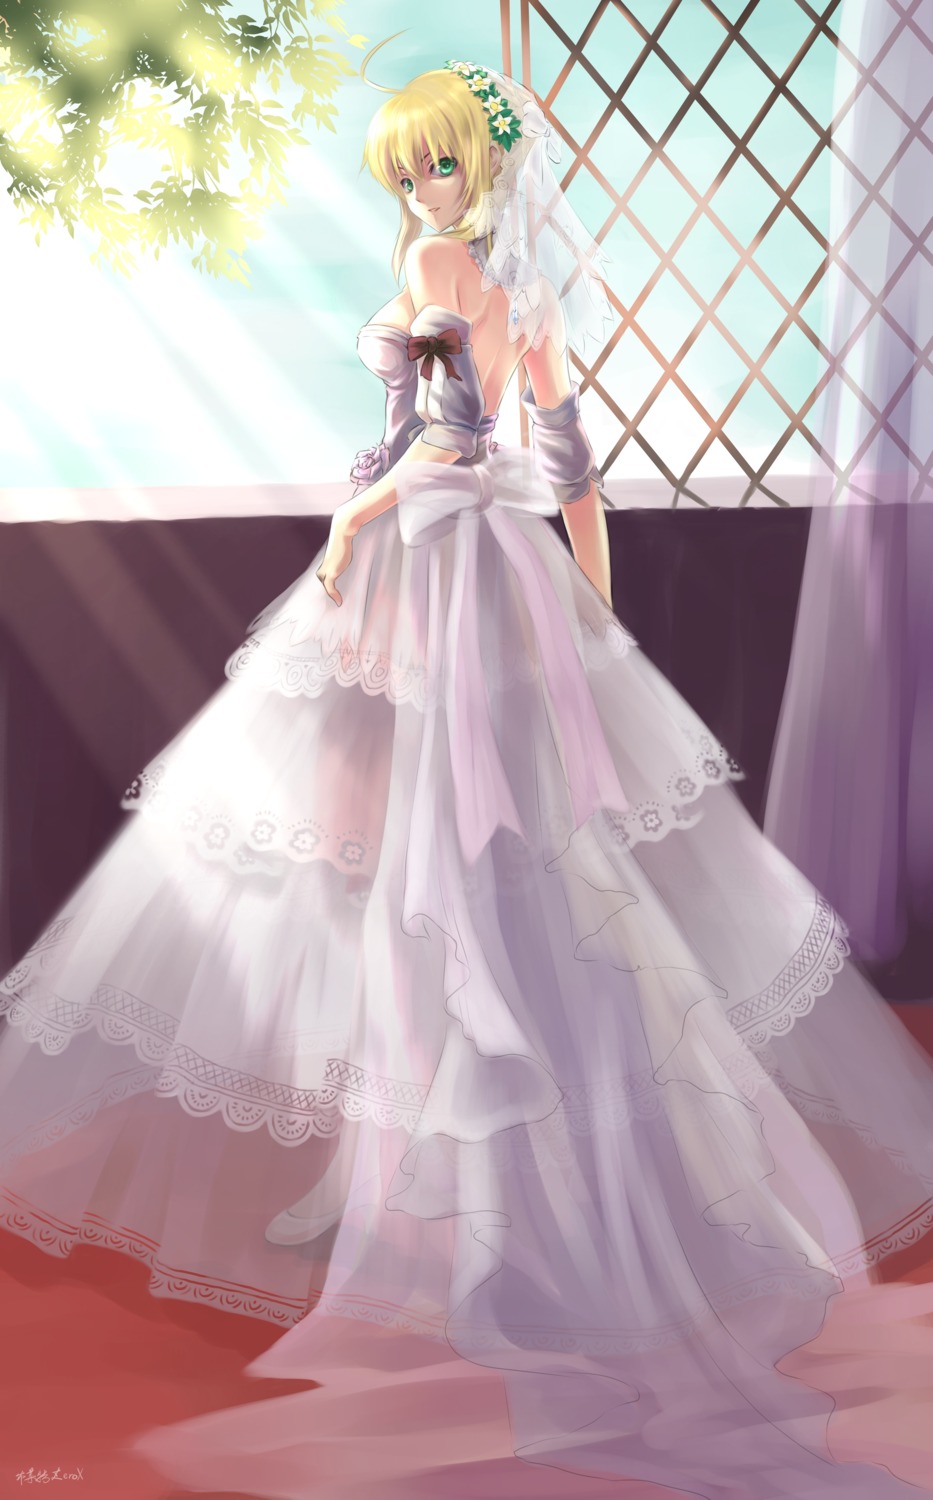 No Bra Under Wedding Dress 10